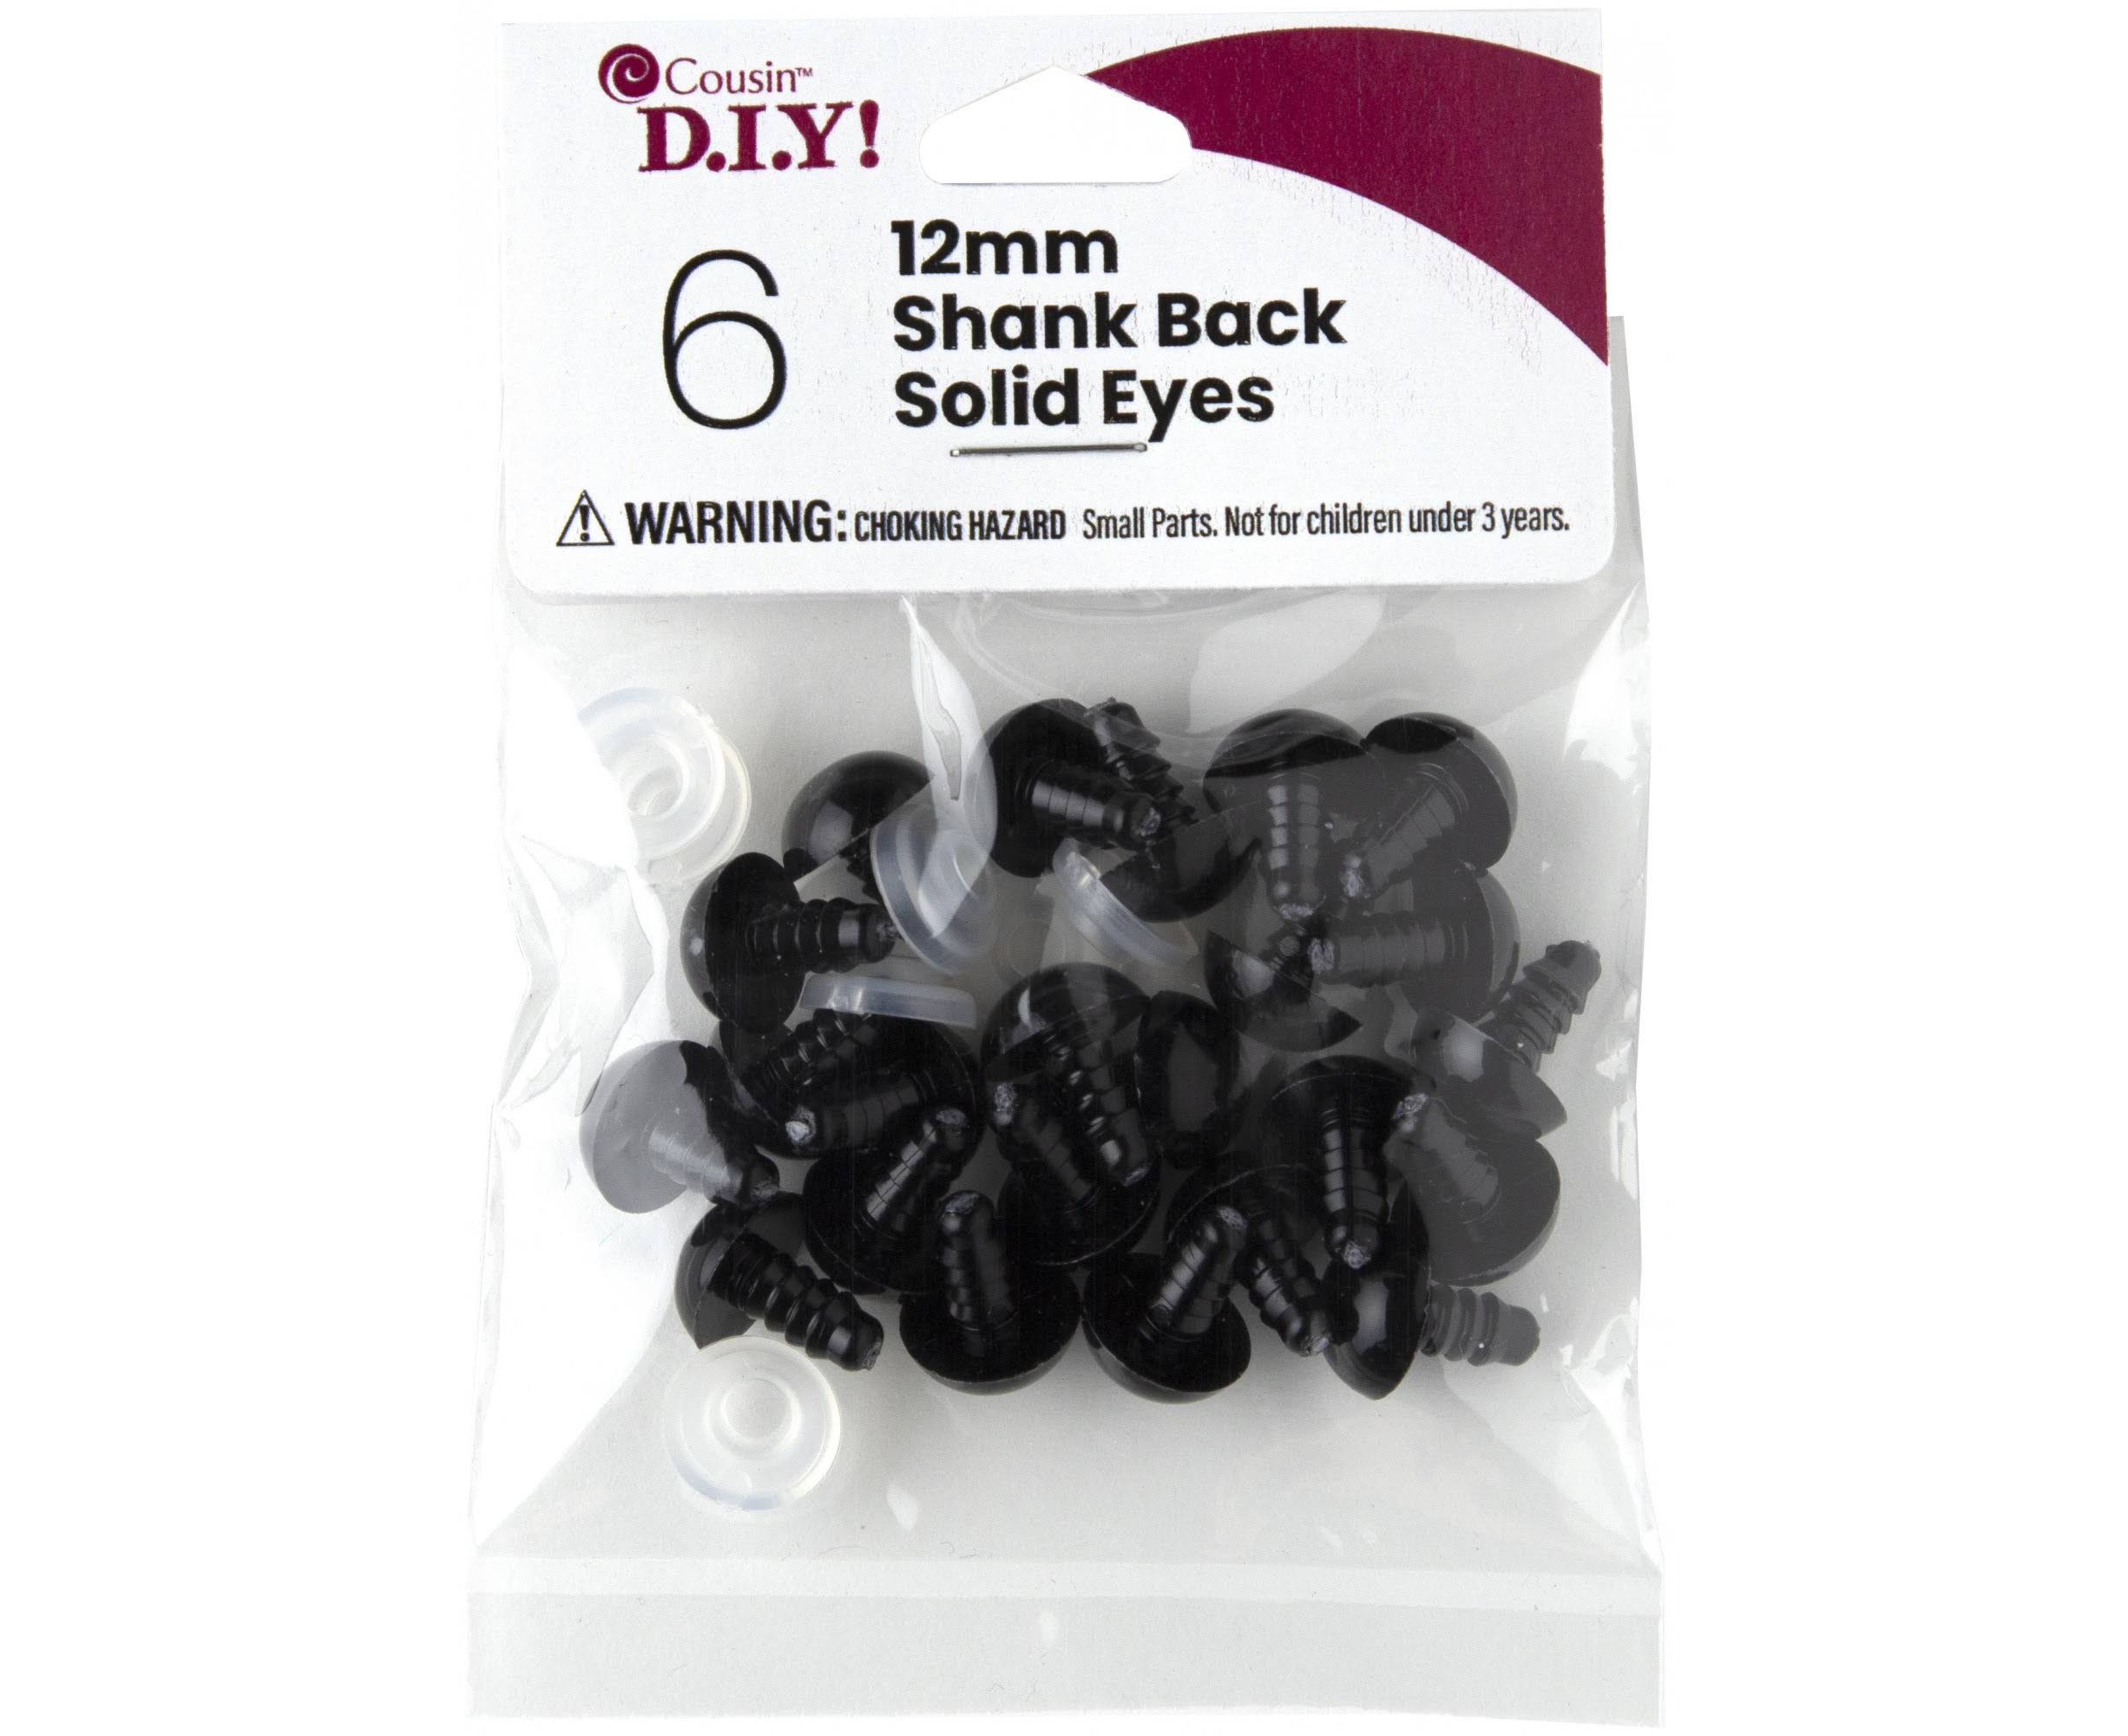 Cousin Shank Back Solid Eyes 12mm 6 Pack - Black